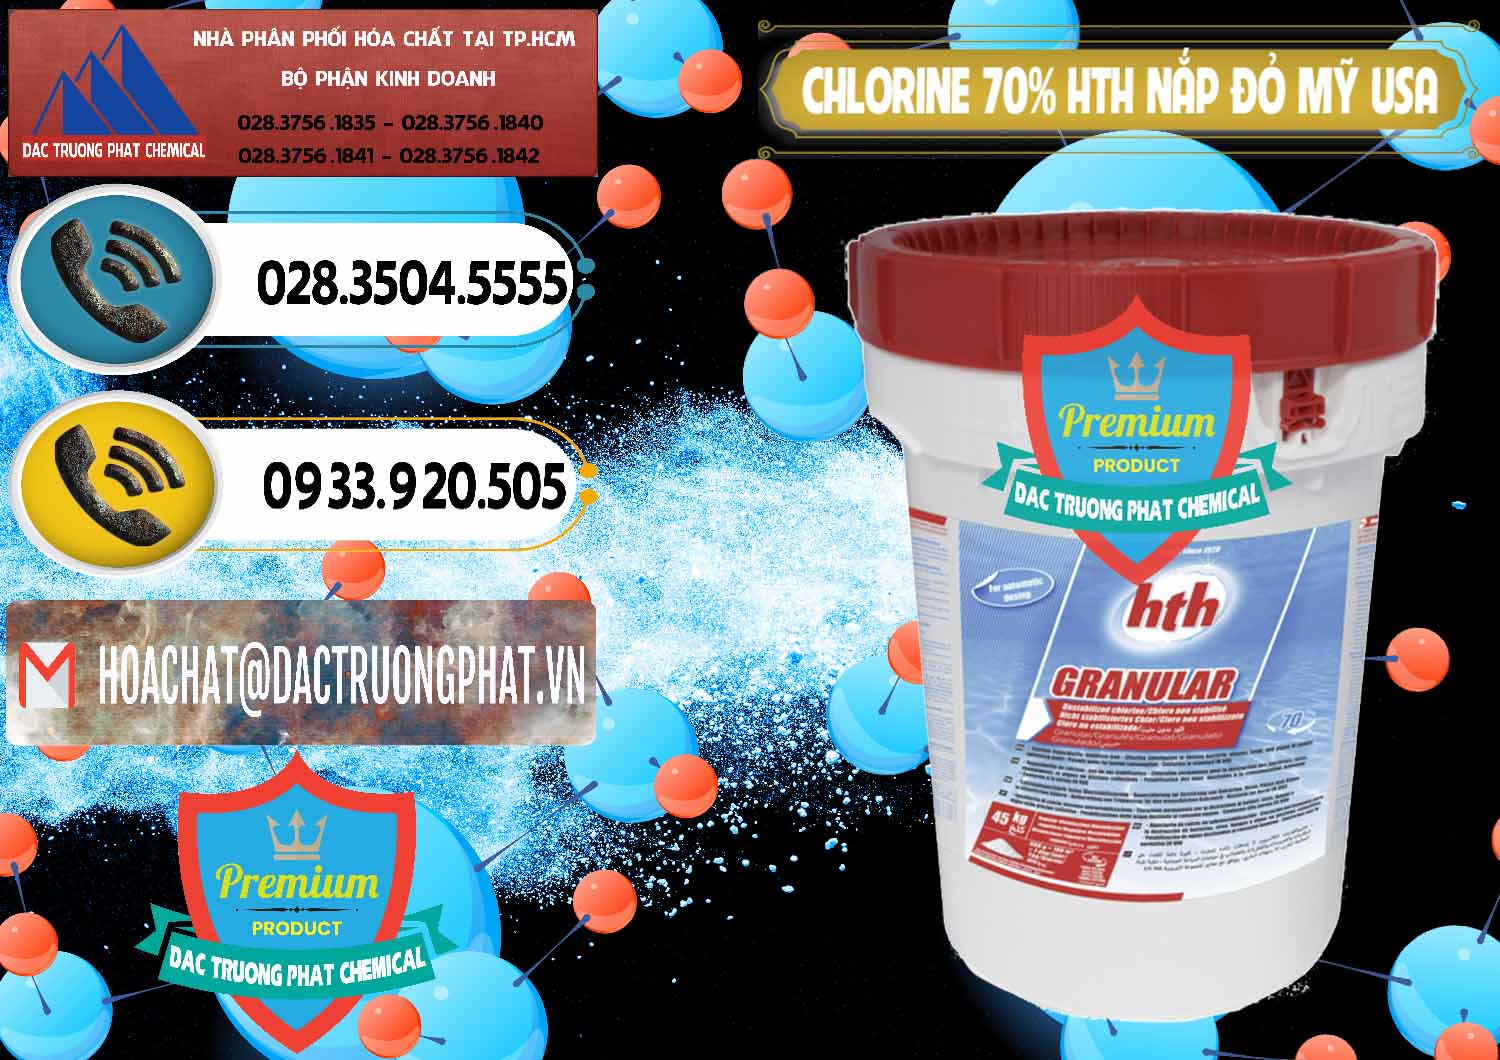 Chuyên cung cấp _ bán Clorin – Chlorine 70% HTH Nắp Đỏ Mỹ Usa - 0244 - Phân phối ( cung ứng ) hóa chất tại TP.HCM - hoachatdetnhuom.vn